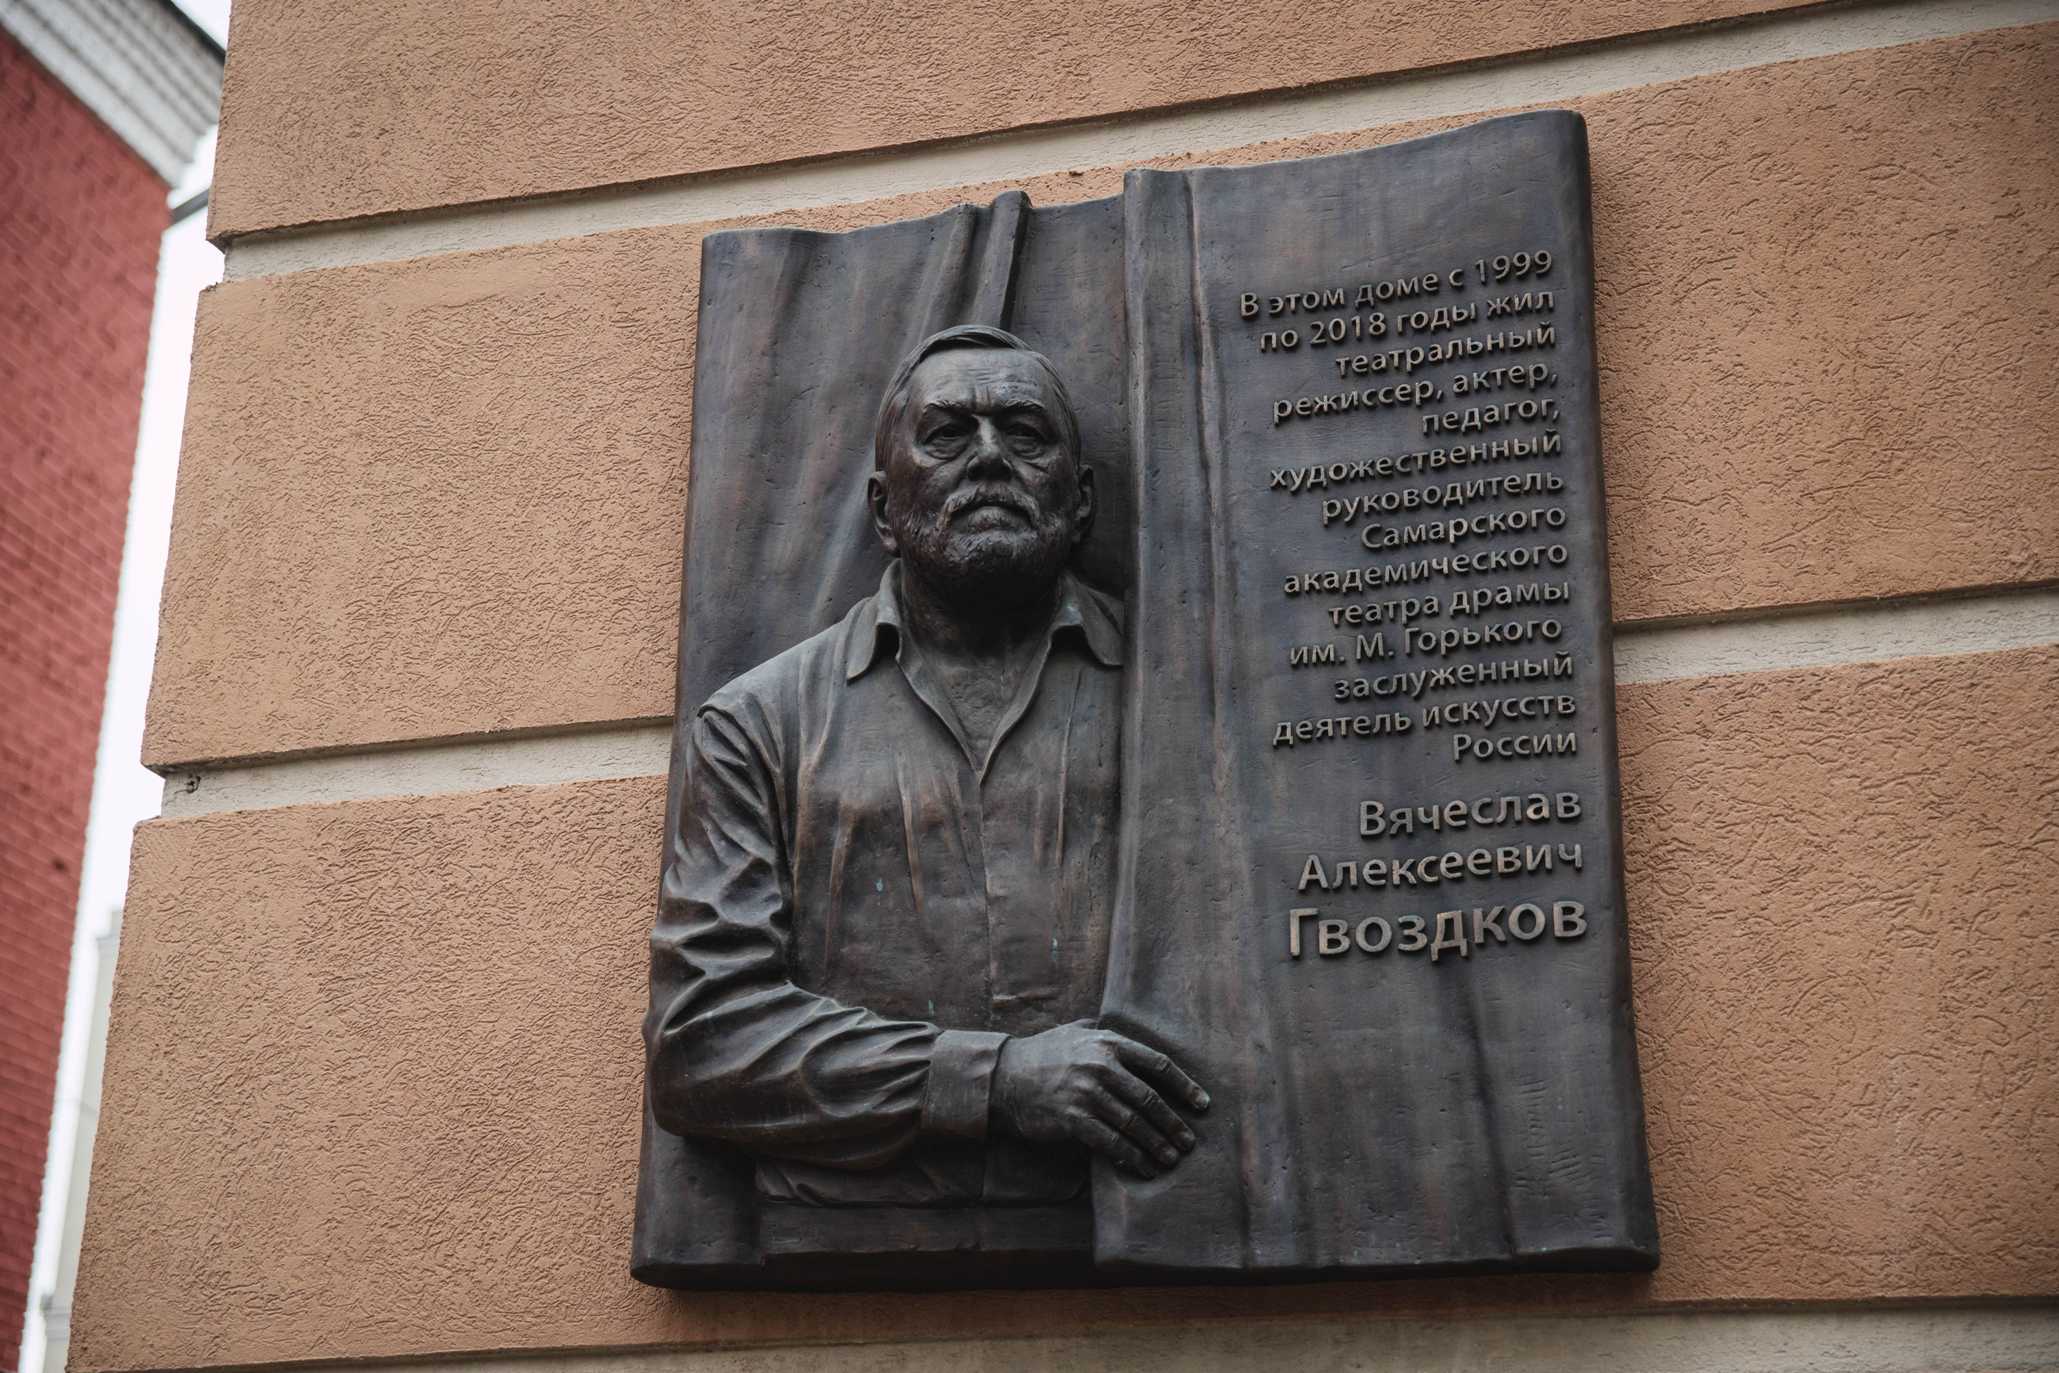 Мемориальная доска Гвоздкову